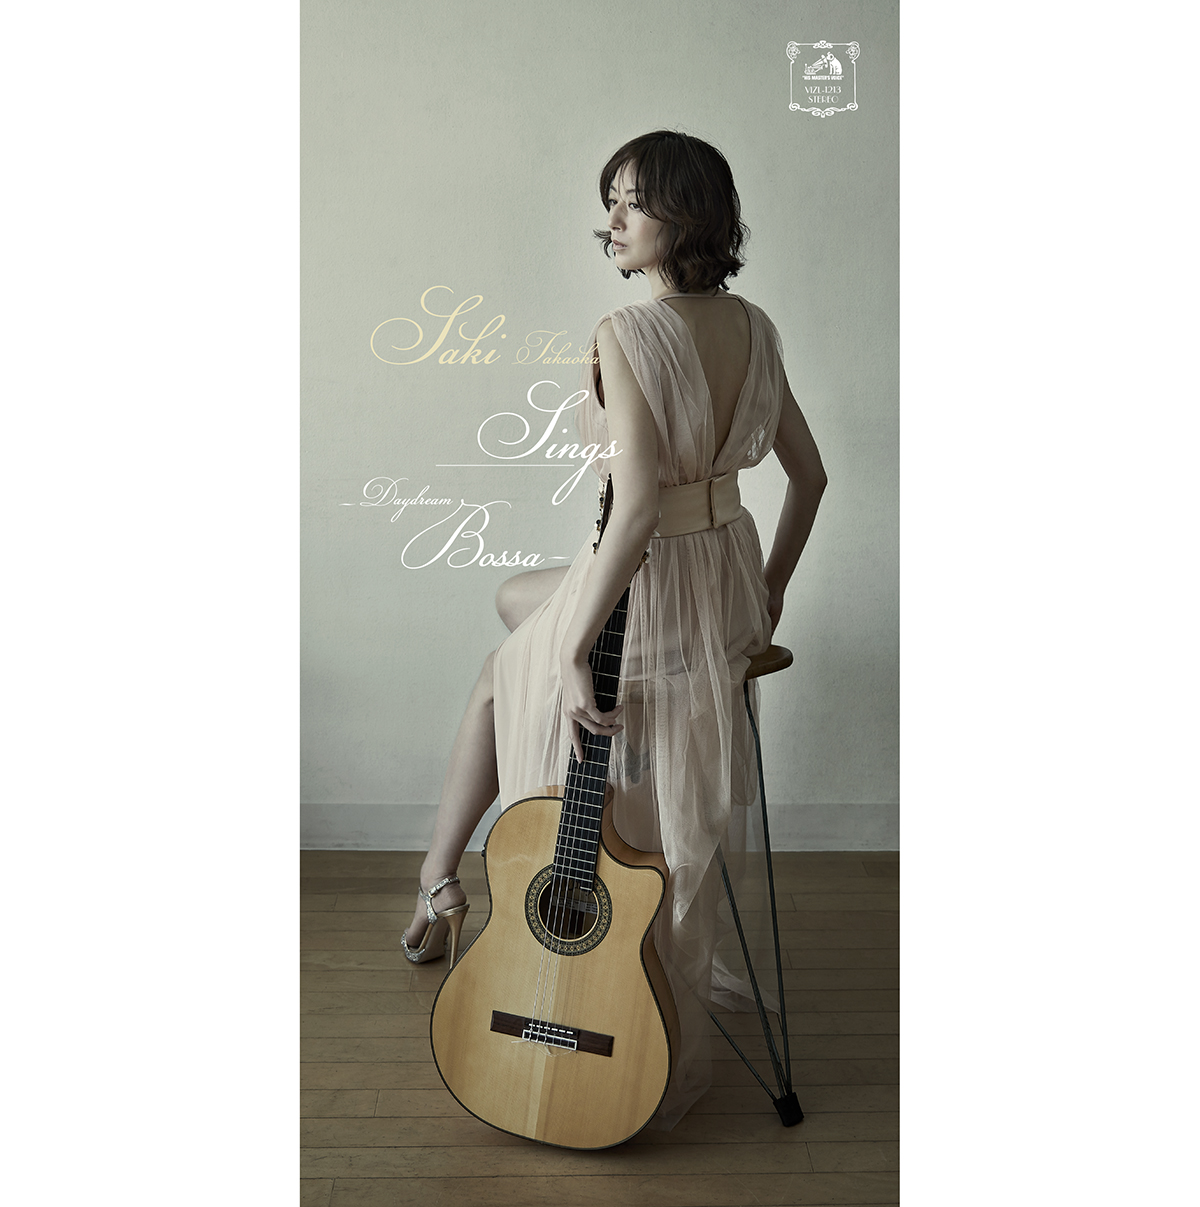 Saki Takaoka “Sings -Daydream Bossa- [Deluxe Edition]”